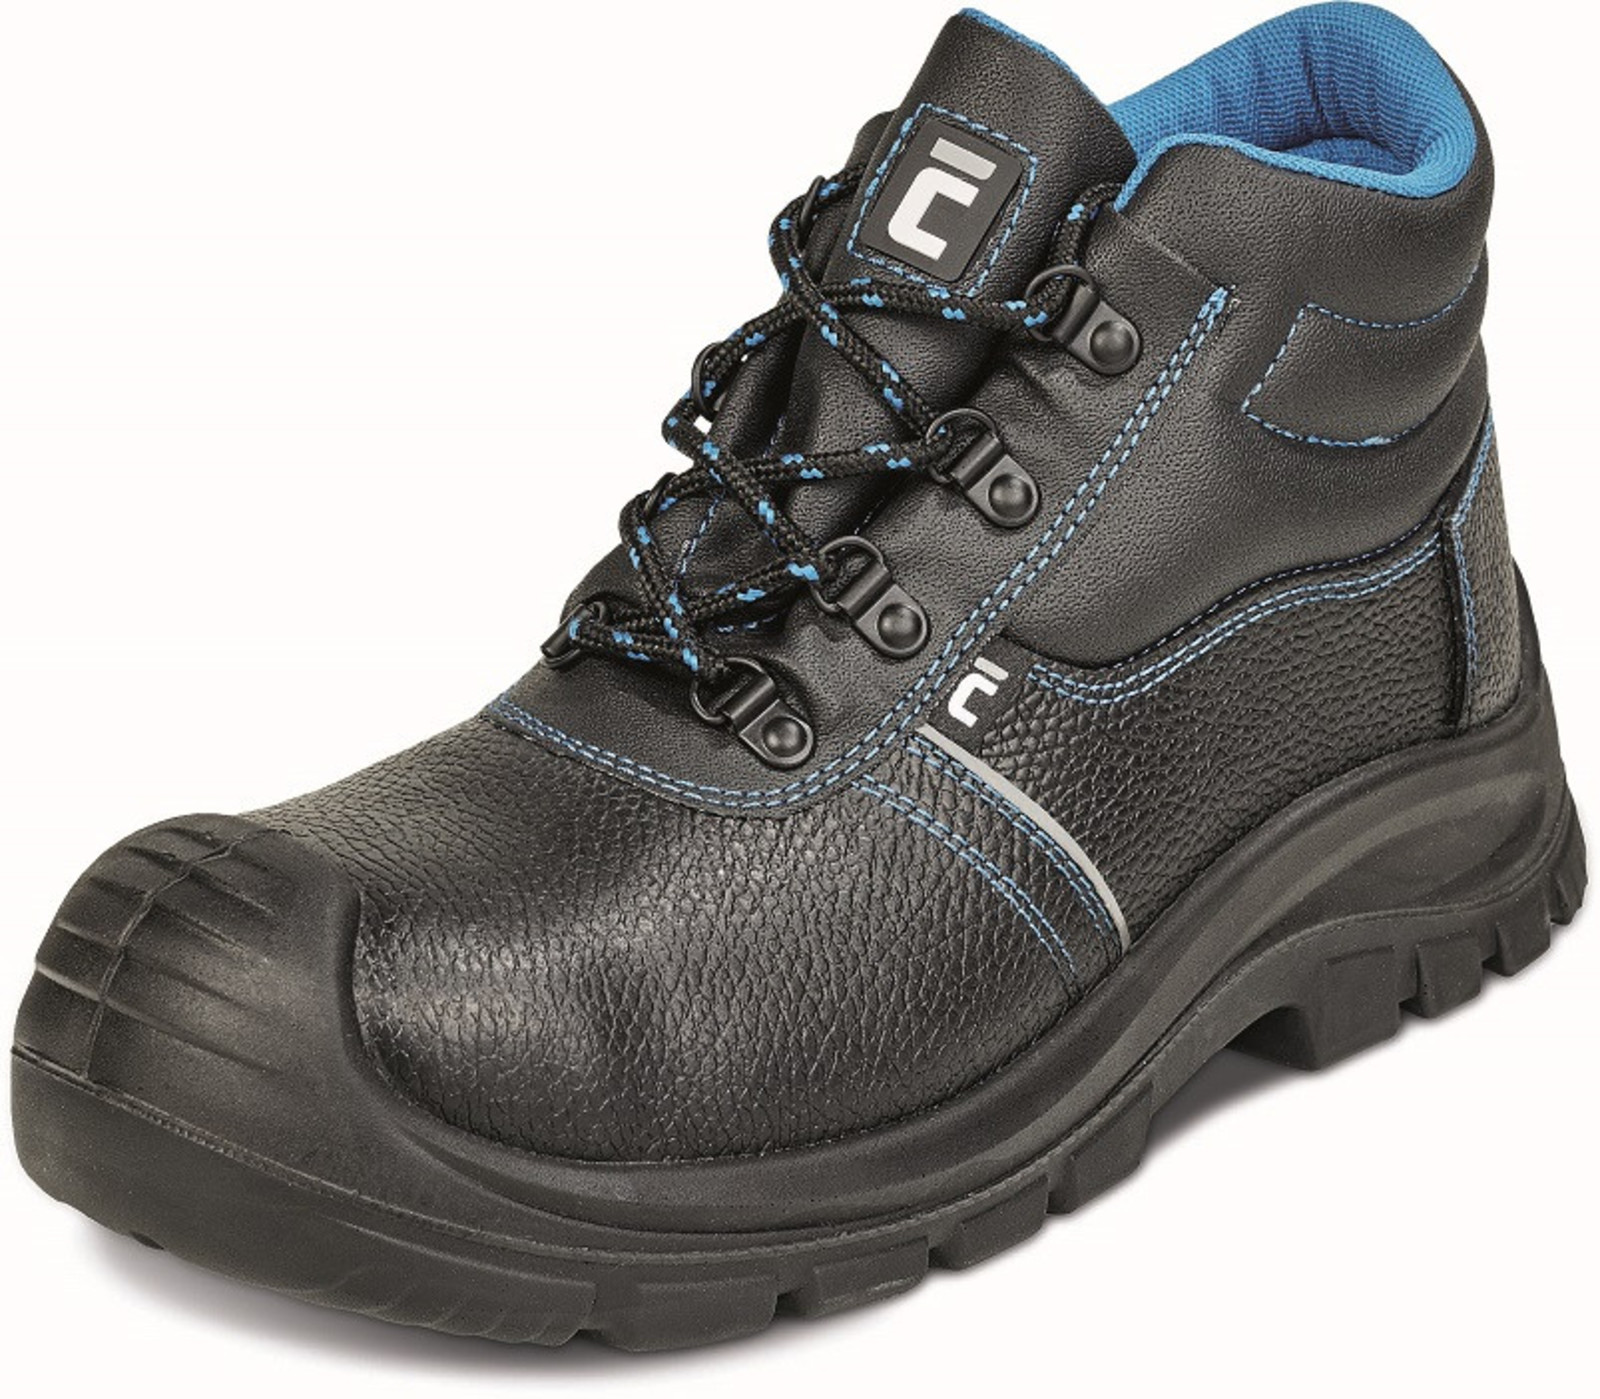 Bezpečnostná obuv Raven XT S3 - veľkosť: 41, farba: čierna